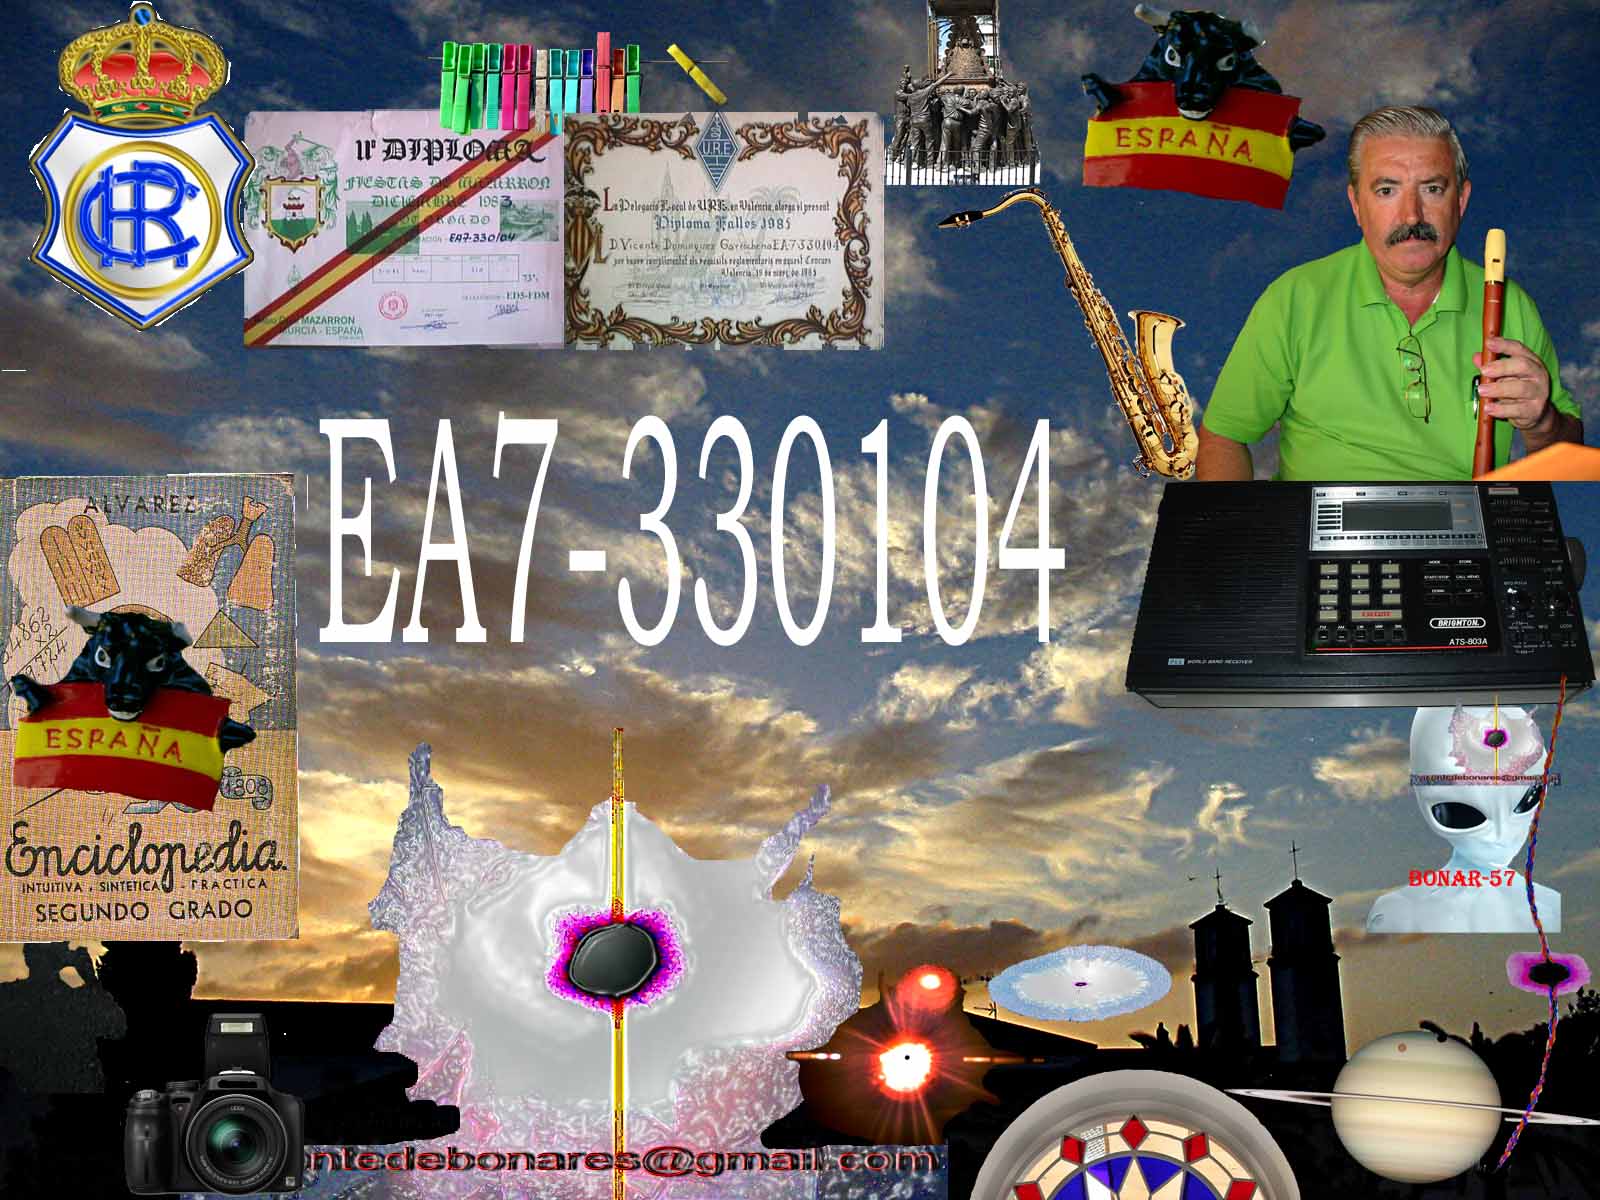 EA7 330104